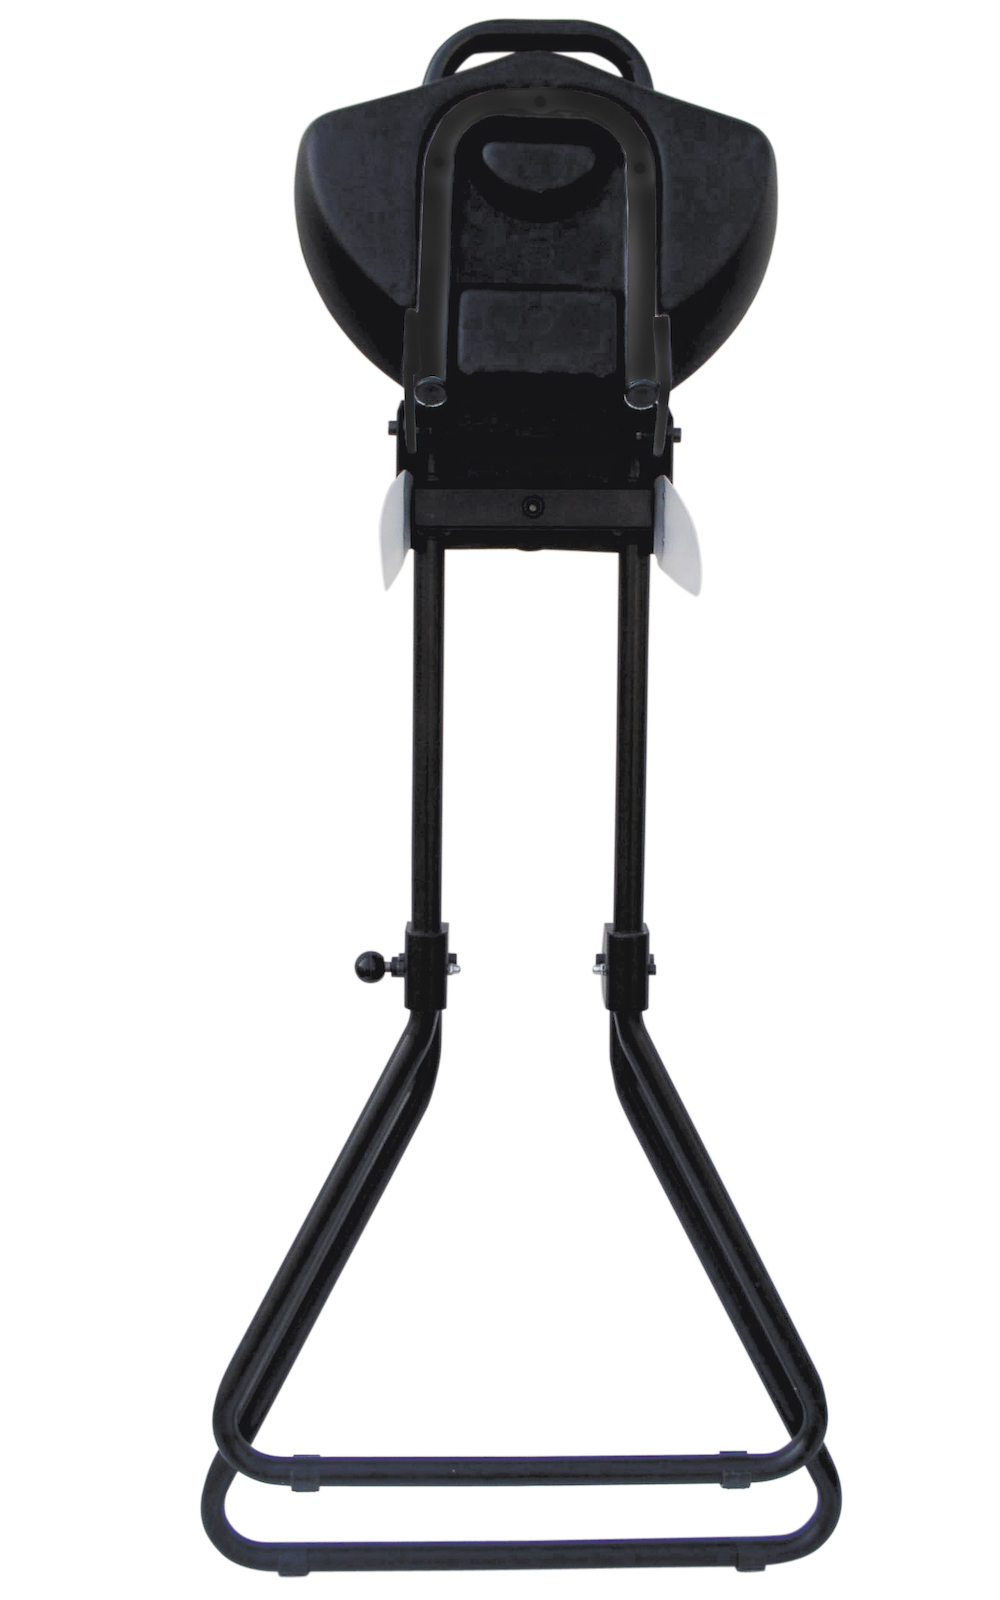 Klappbare Stehhilfe Plus | Sitzhöhe 65-85cm | Tragfähigkeit 100kg | Polyurethane-Sitz | Schwarz/Schwarz